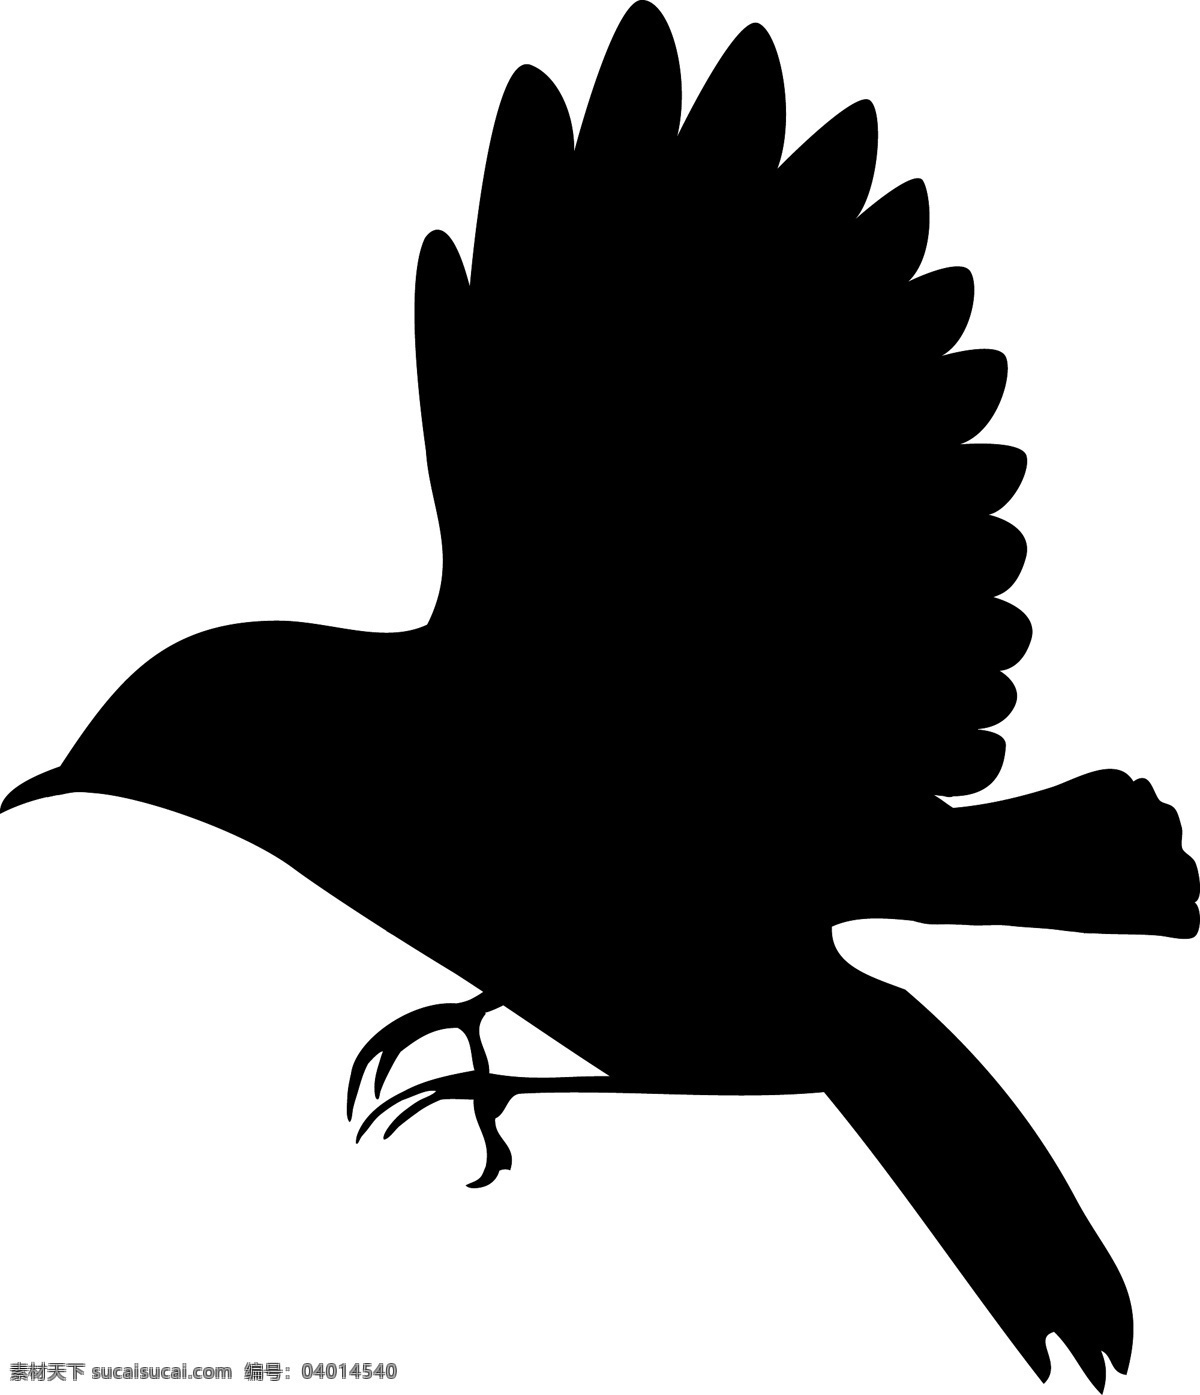 鸟类 底纹 动物 飞禽 剪影 生物世界 鸟类矢量素材 鸟类模板下载 矢量 psd源文件